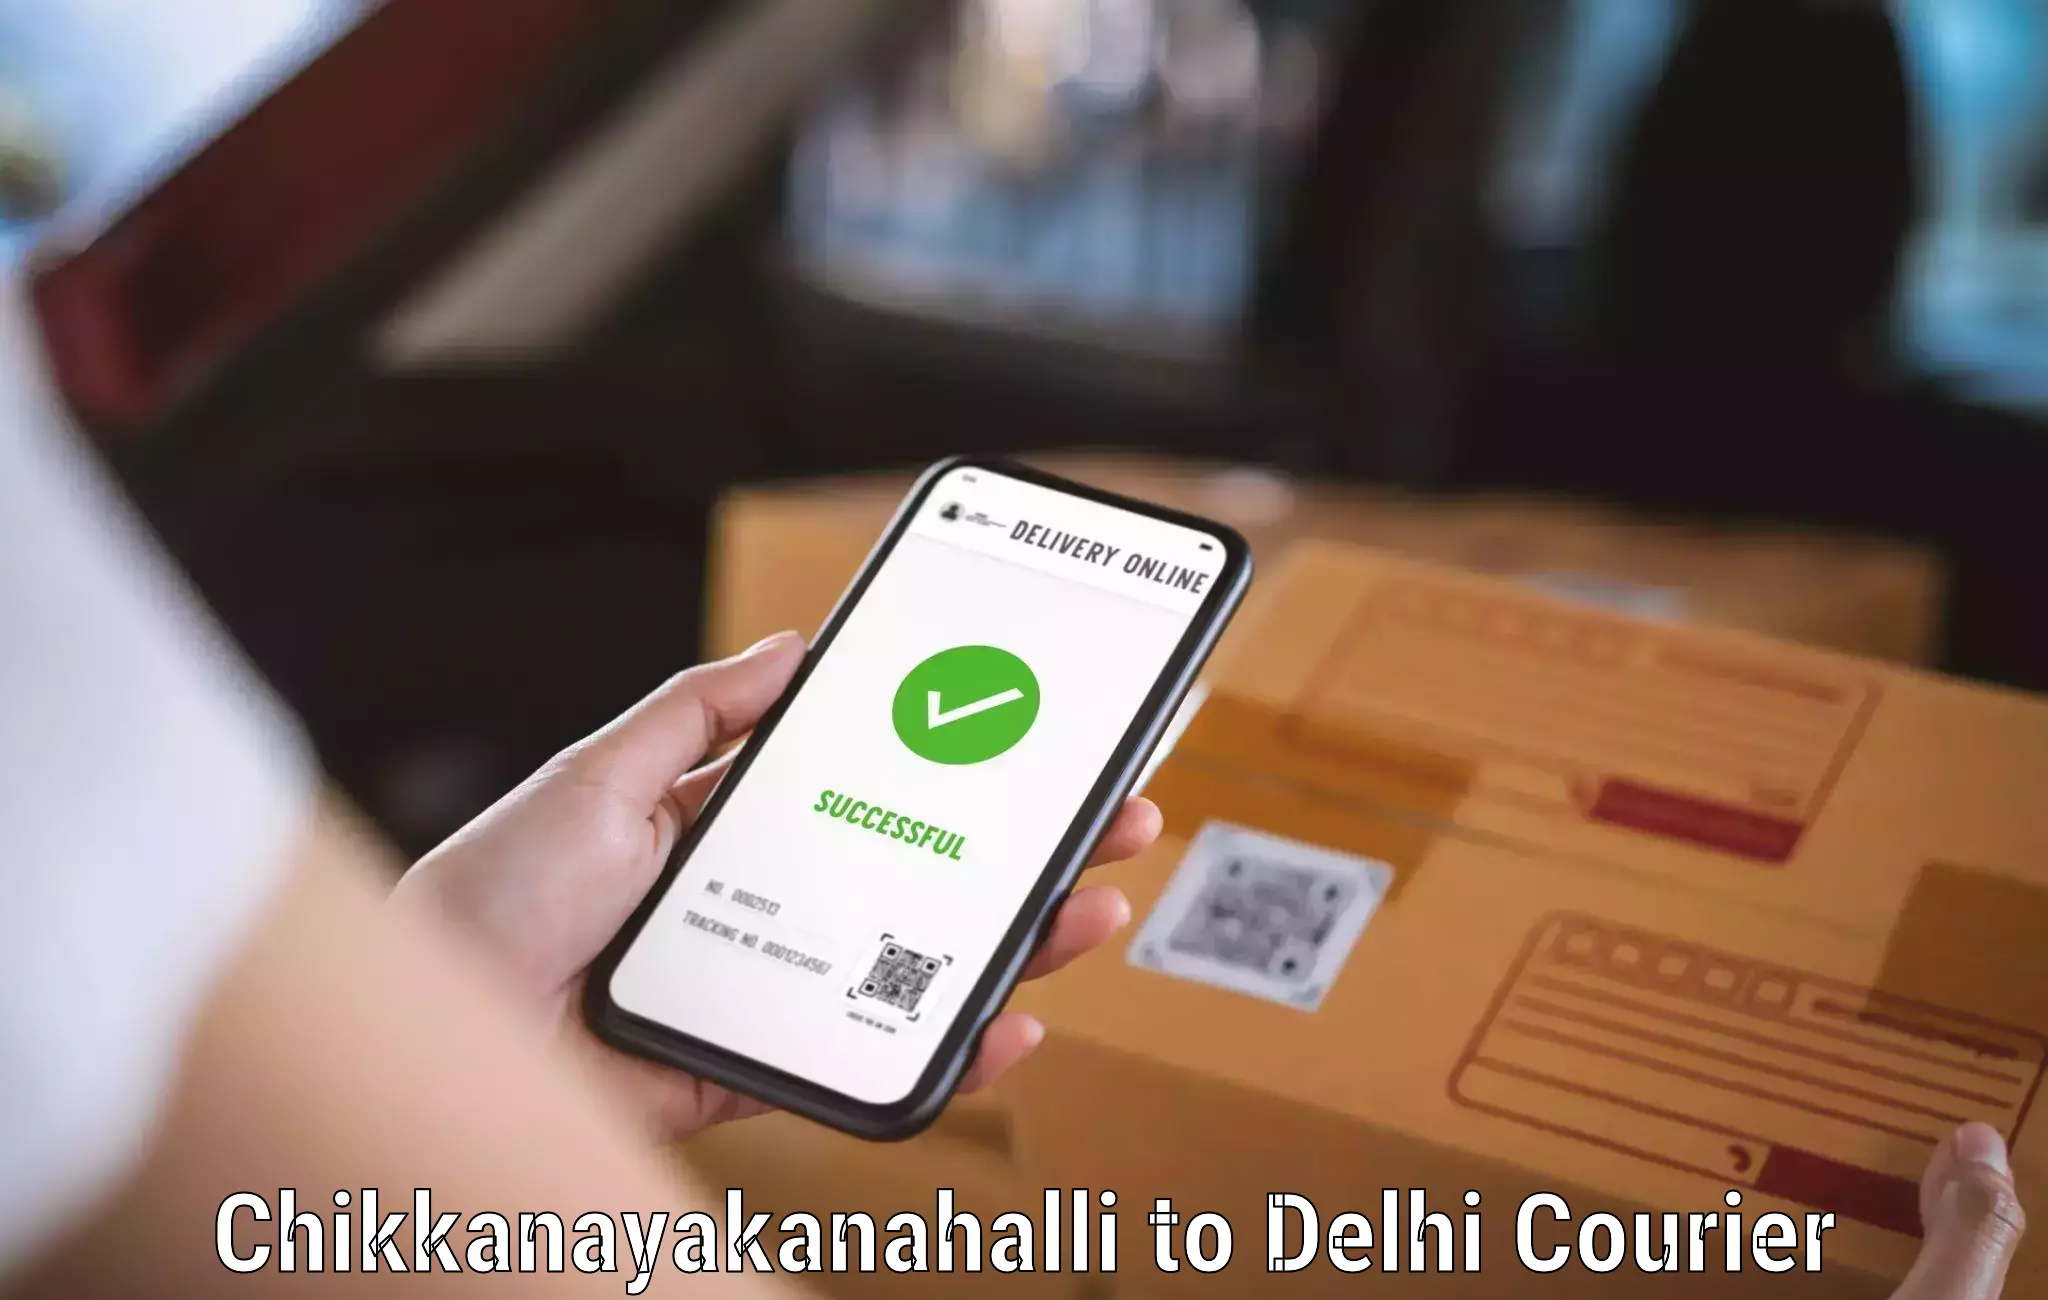 High-capacity courier solutions Chikkanayakanahalli to NIT Delhi